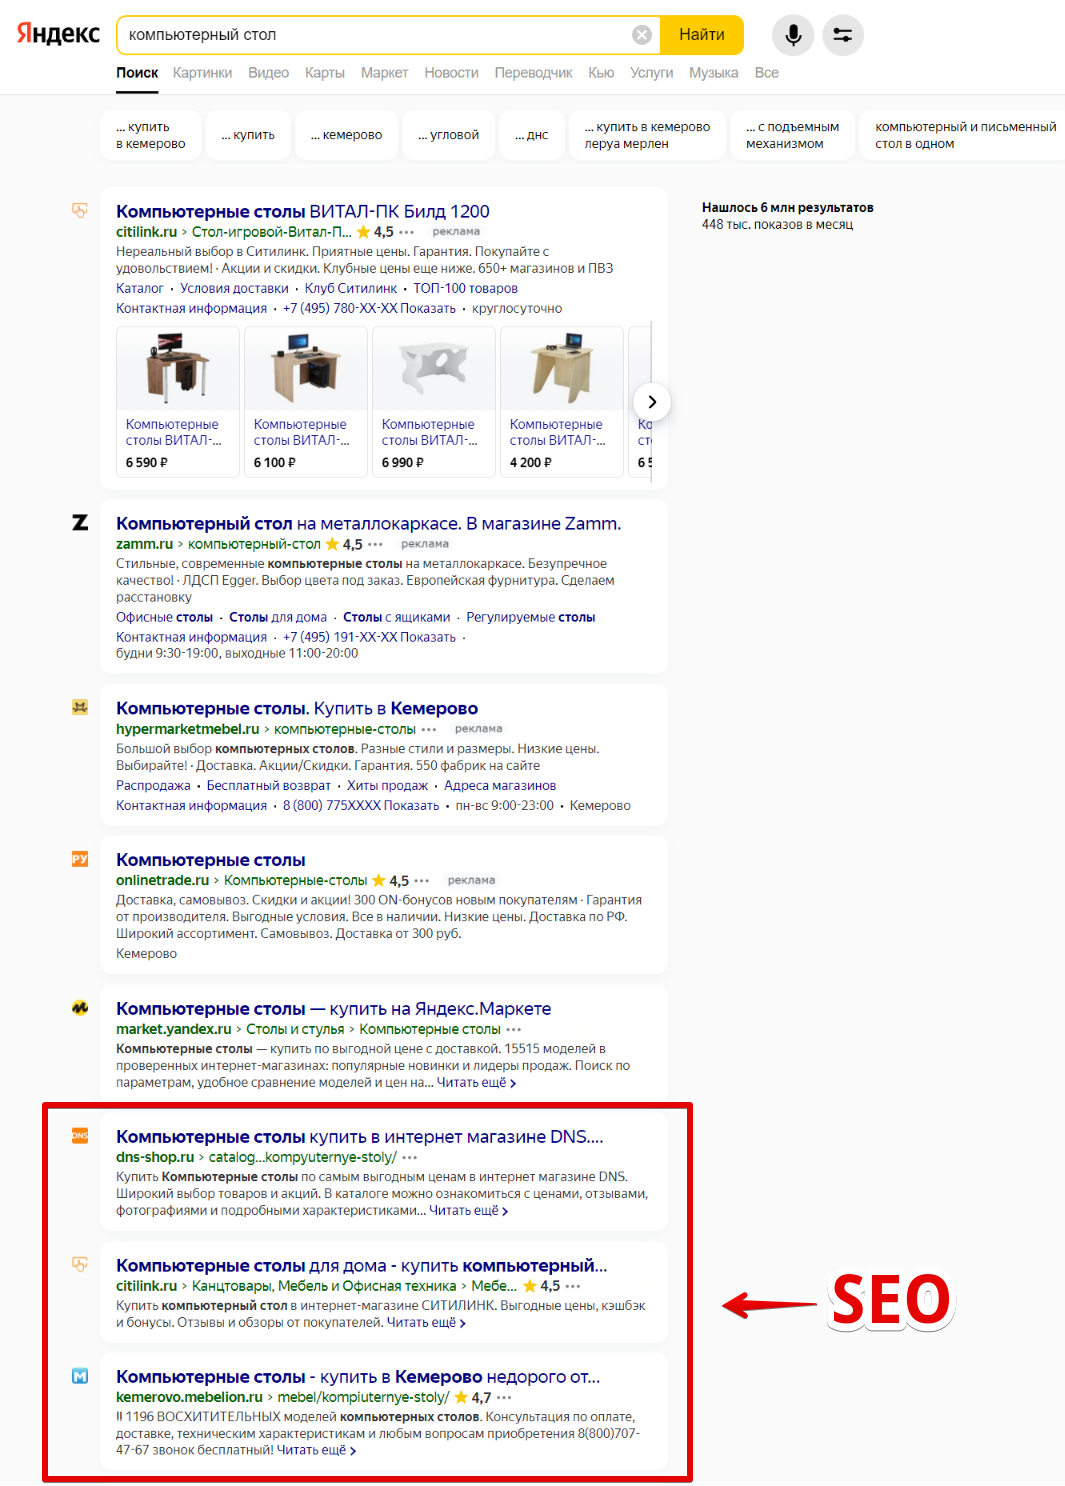 Пример естественной выдачи страниц сайтов на первой странице поисковика «Яндекс»